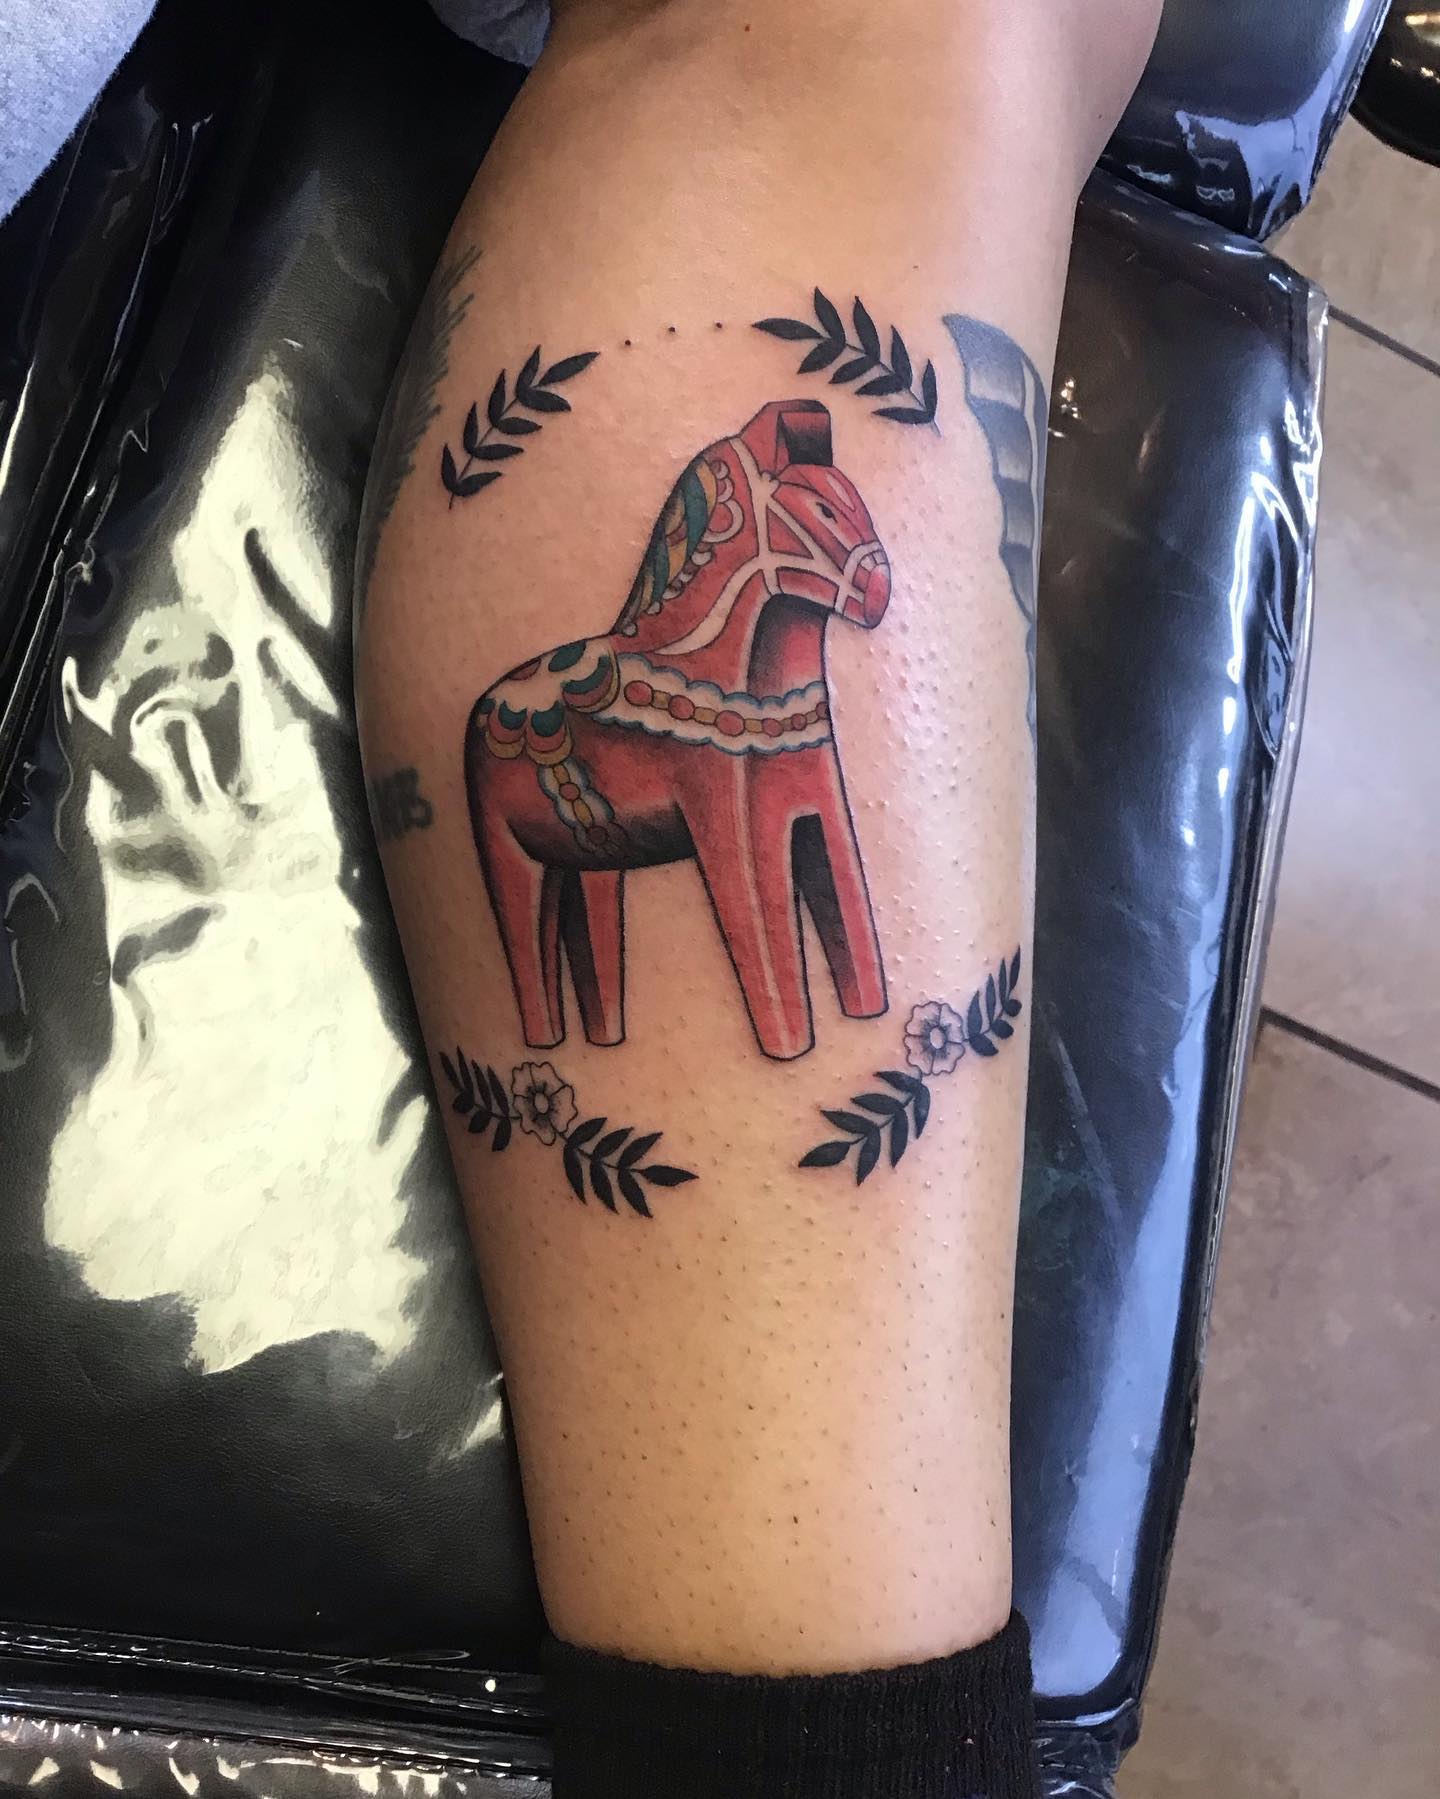 Tatuaje de un caballo de hierro